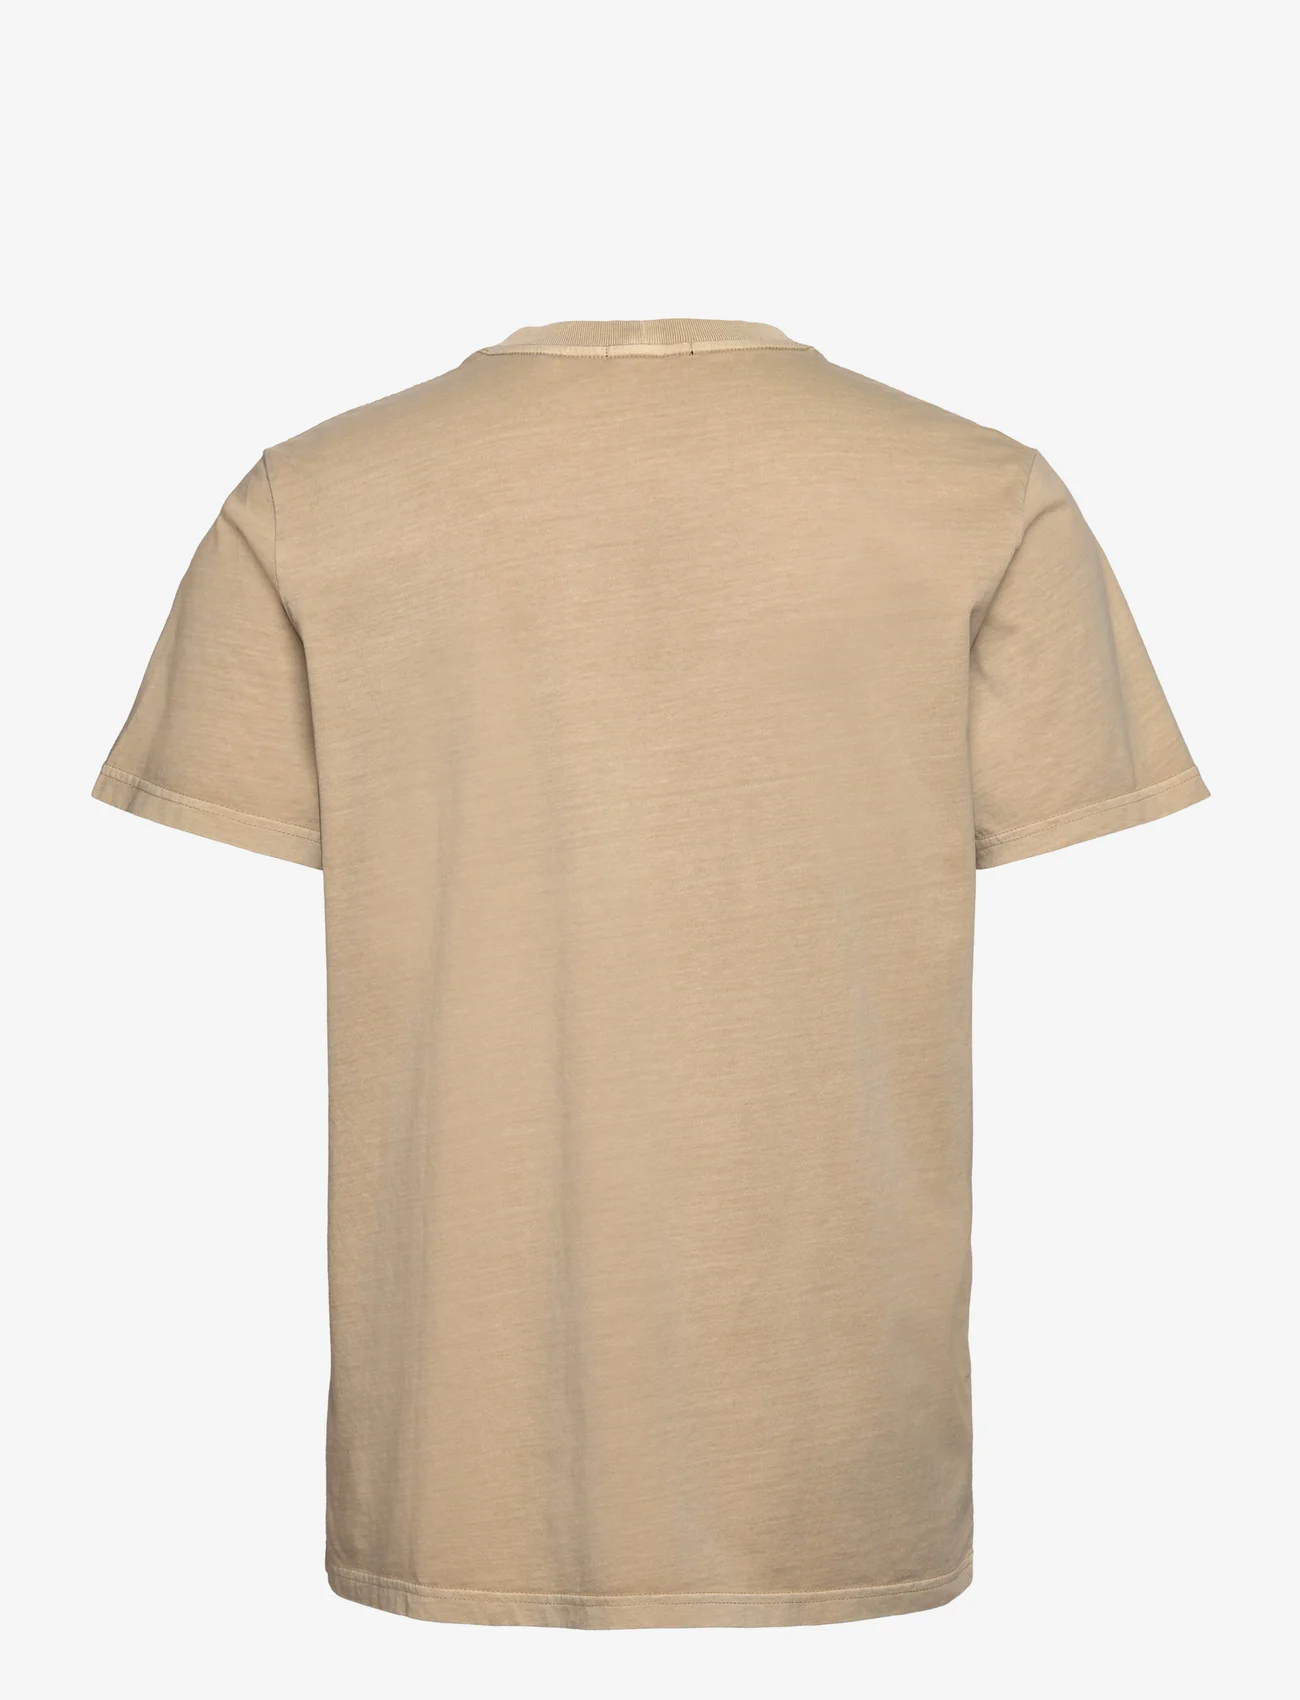 NEUW - ORGANIC NEUW BAND TEE - basis-t-skjorter - beige - 1